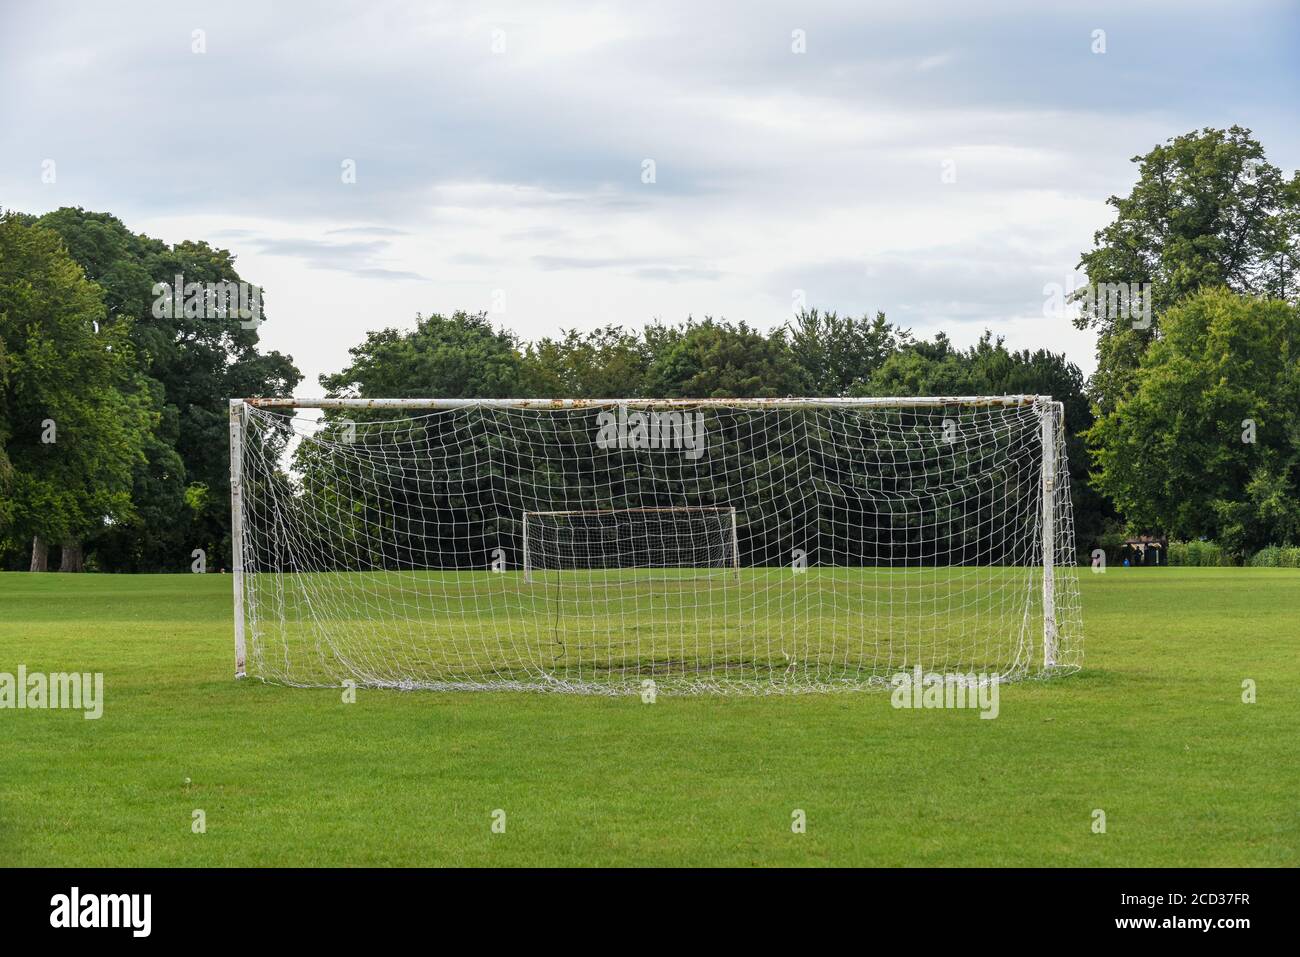 Fußballplatz im Freien mit Toren und Fußballnetzen in der Öffentlichkeit  parken Stockfotografie - Alamy